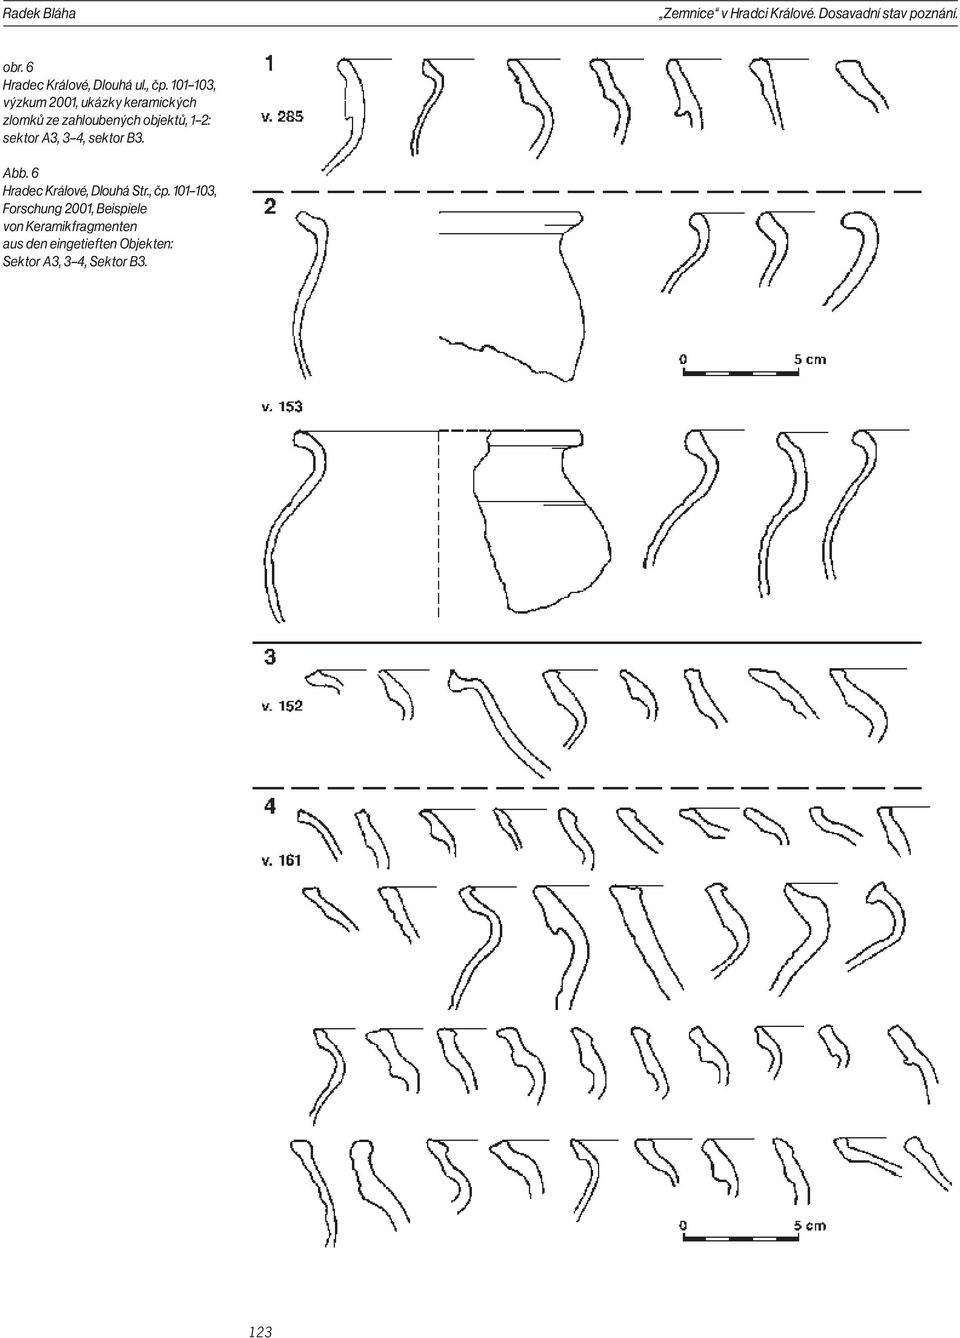 101 103, výzkum 2001, ukázky keramických zlomků ze zahloubených objektů, 1 2: sektor A3, 3